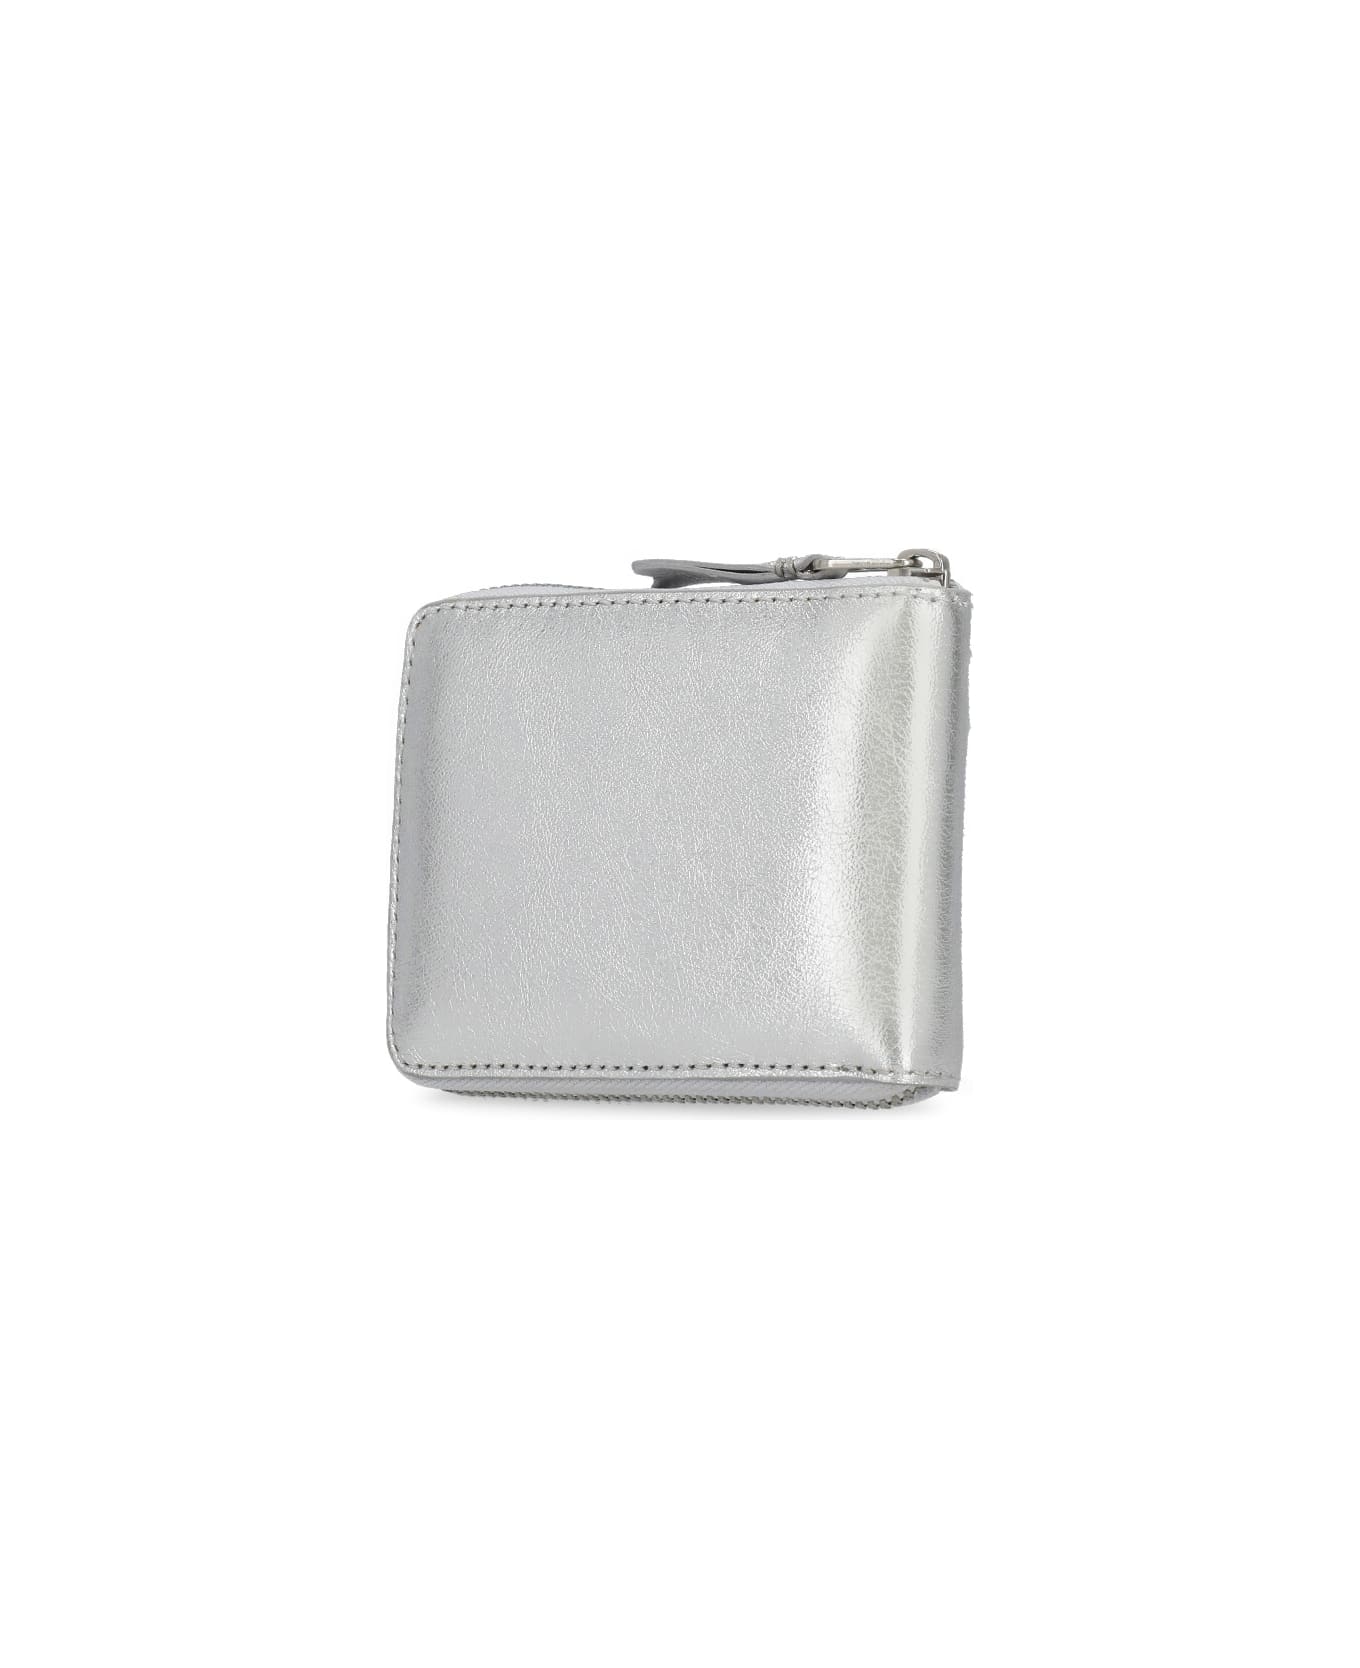 Comme des Garçons Wallet Leather Wallet - Silver 財布